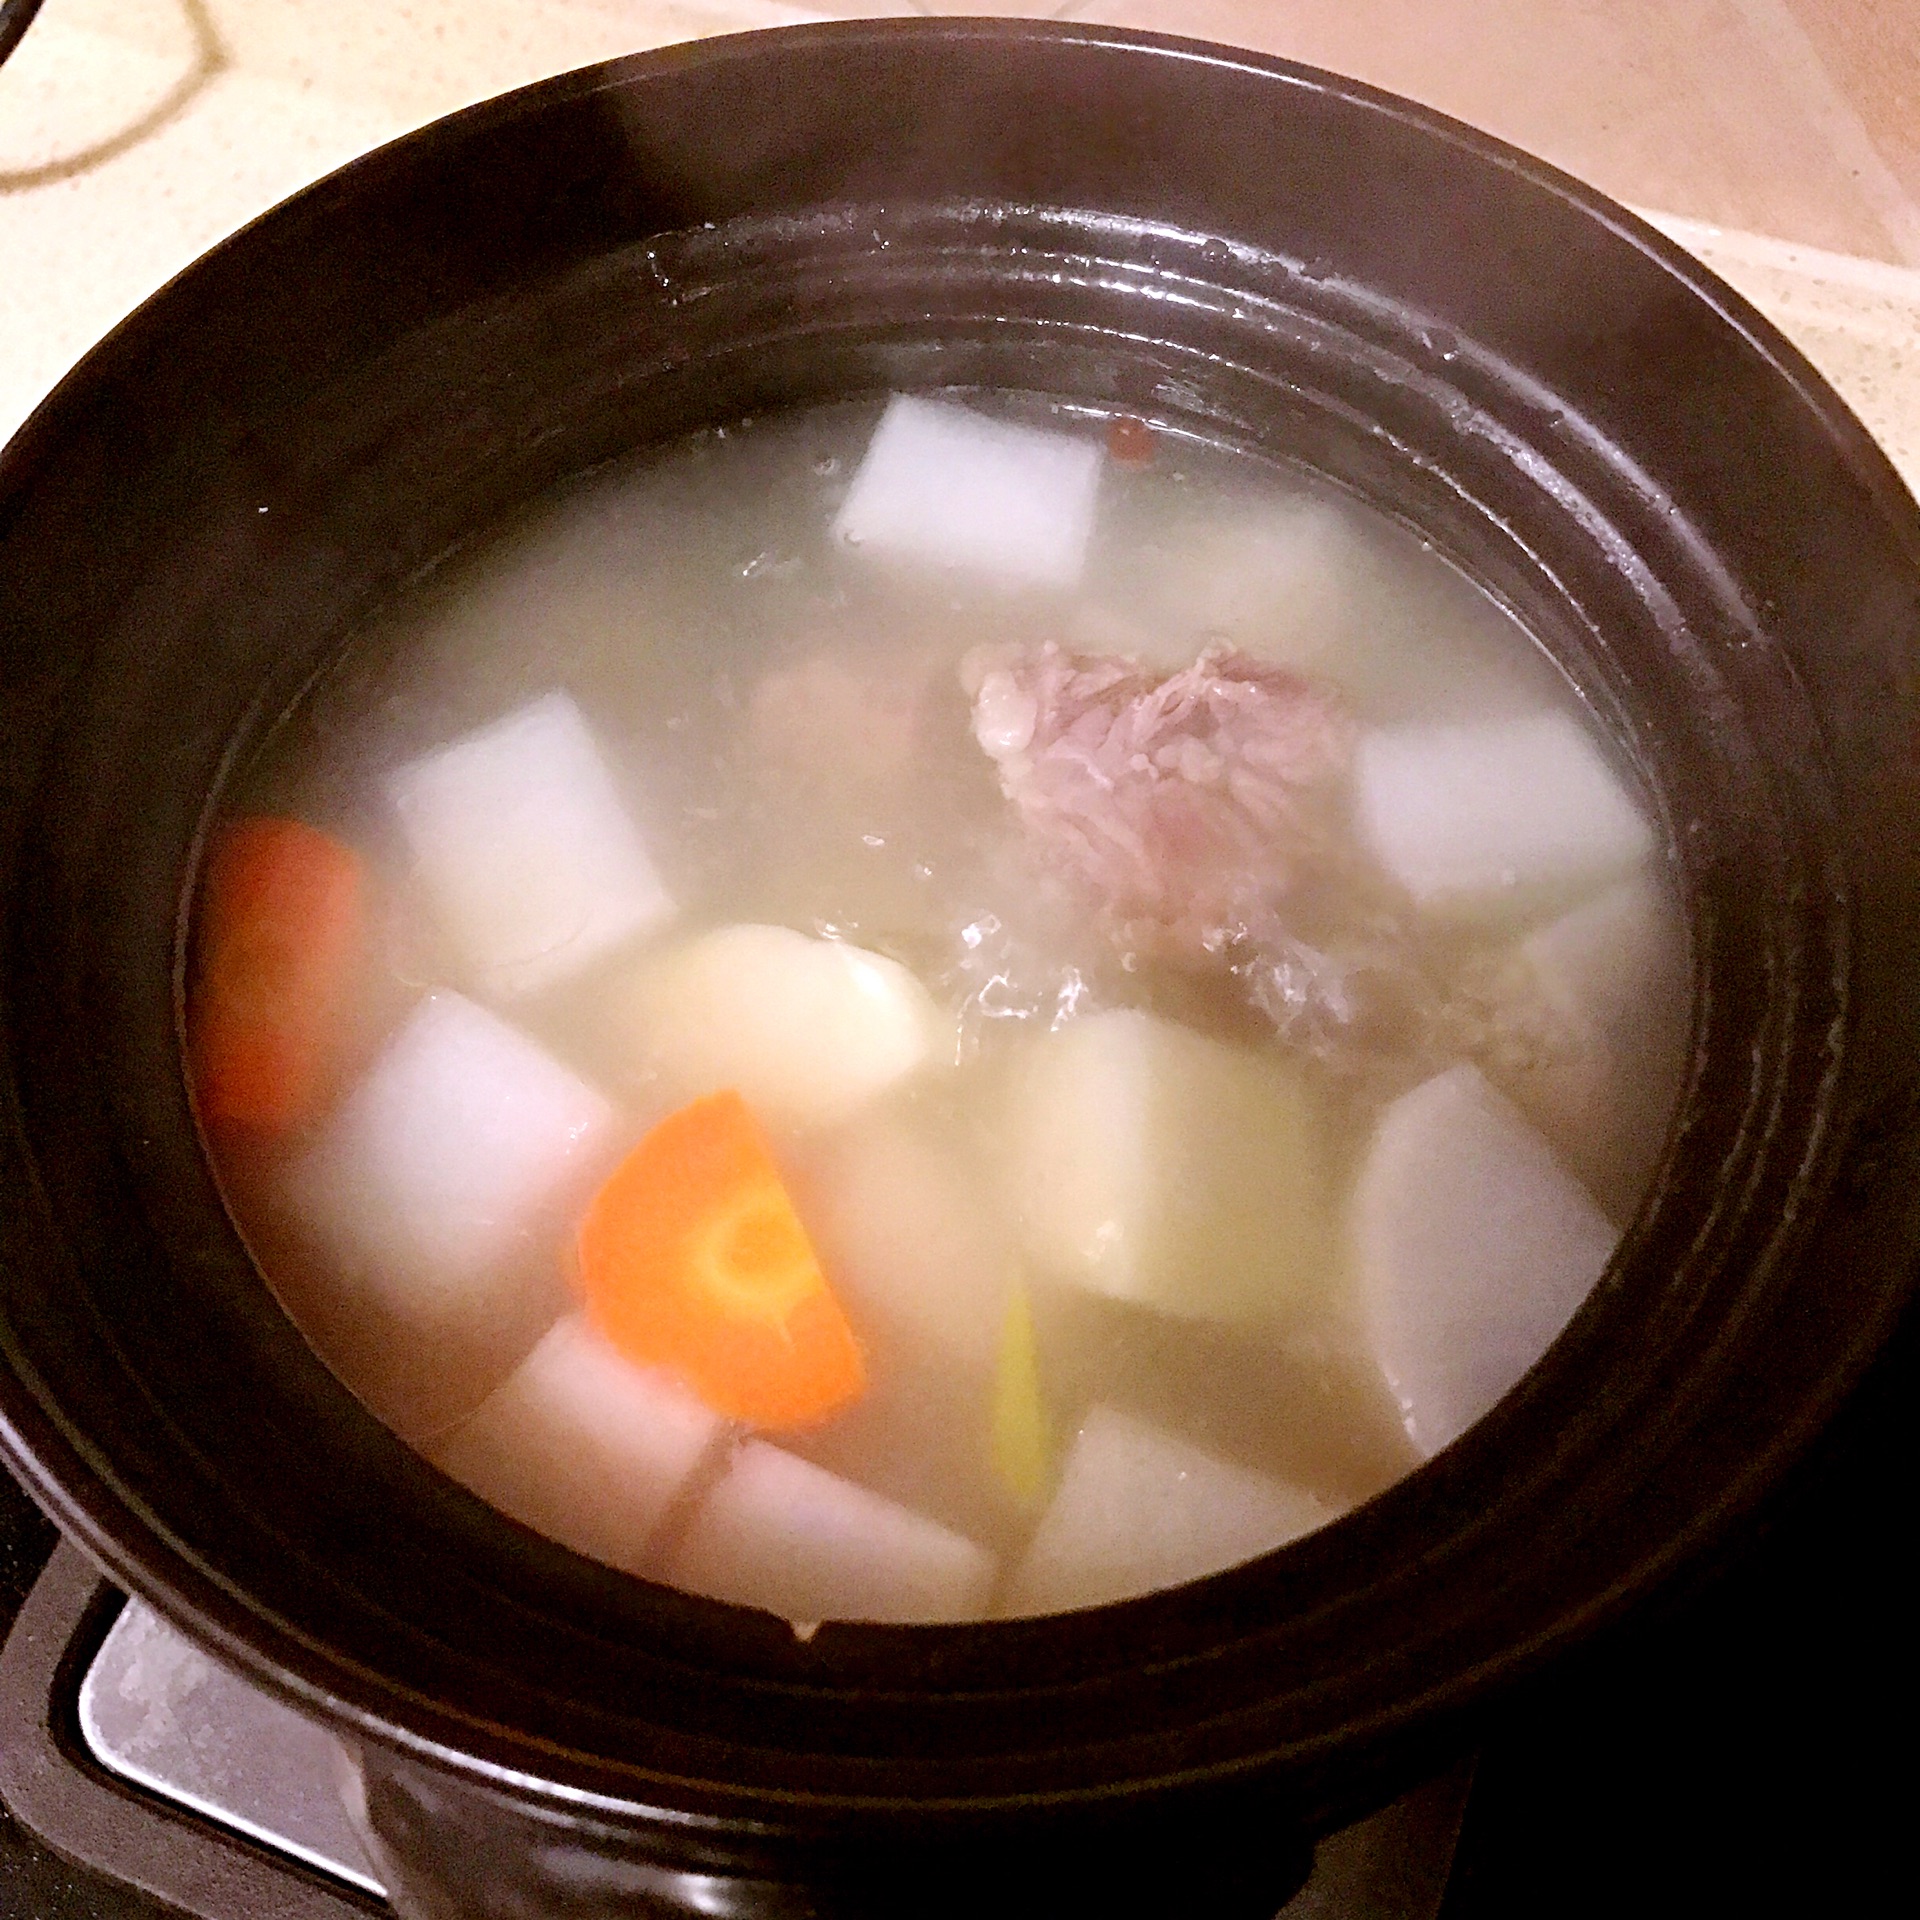 羊肉萝卜丝汤的做法_【图解】羊肉萝卜丝汤怎么做如何做好吃_羊肉萝卜丝汤家常做法大全_snow特别的_豆果美食